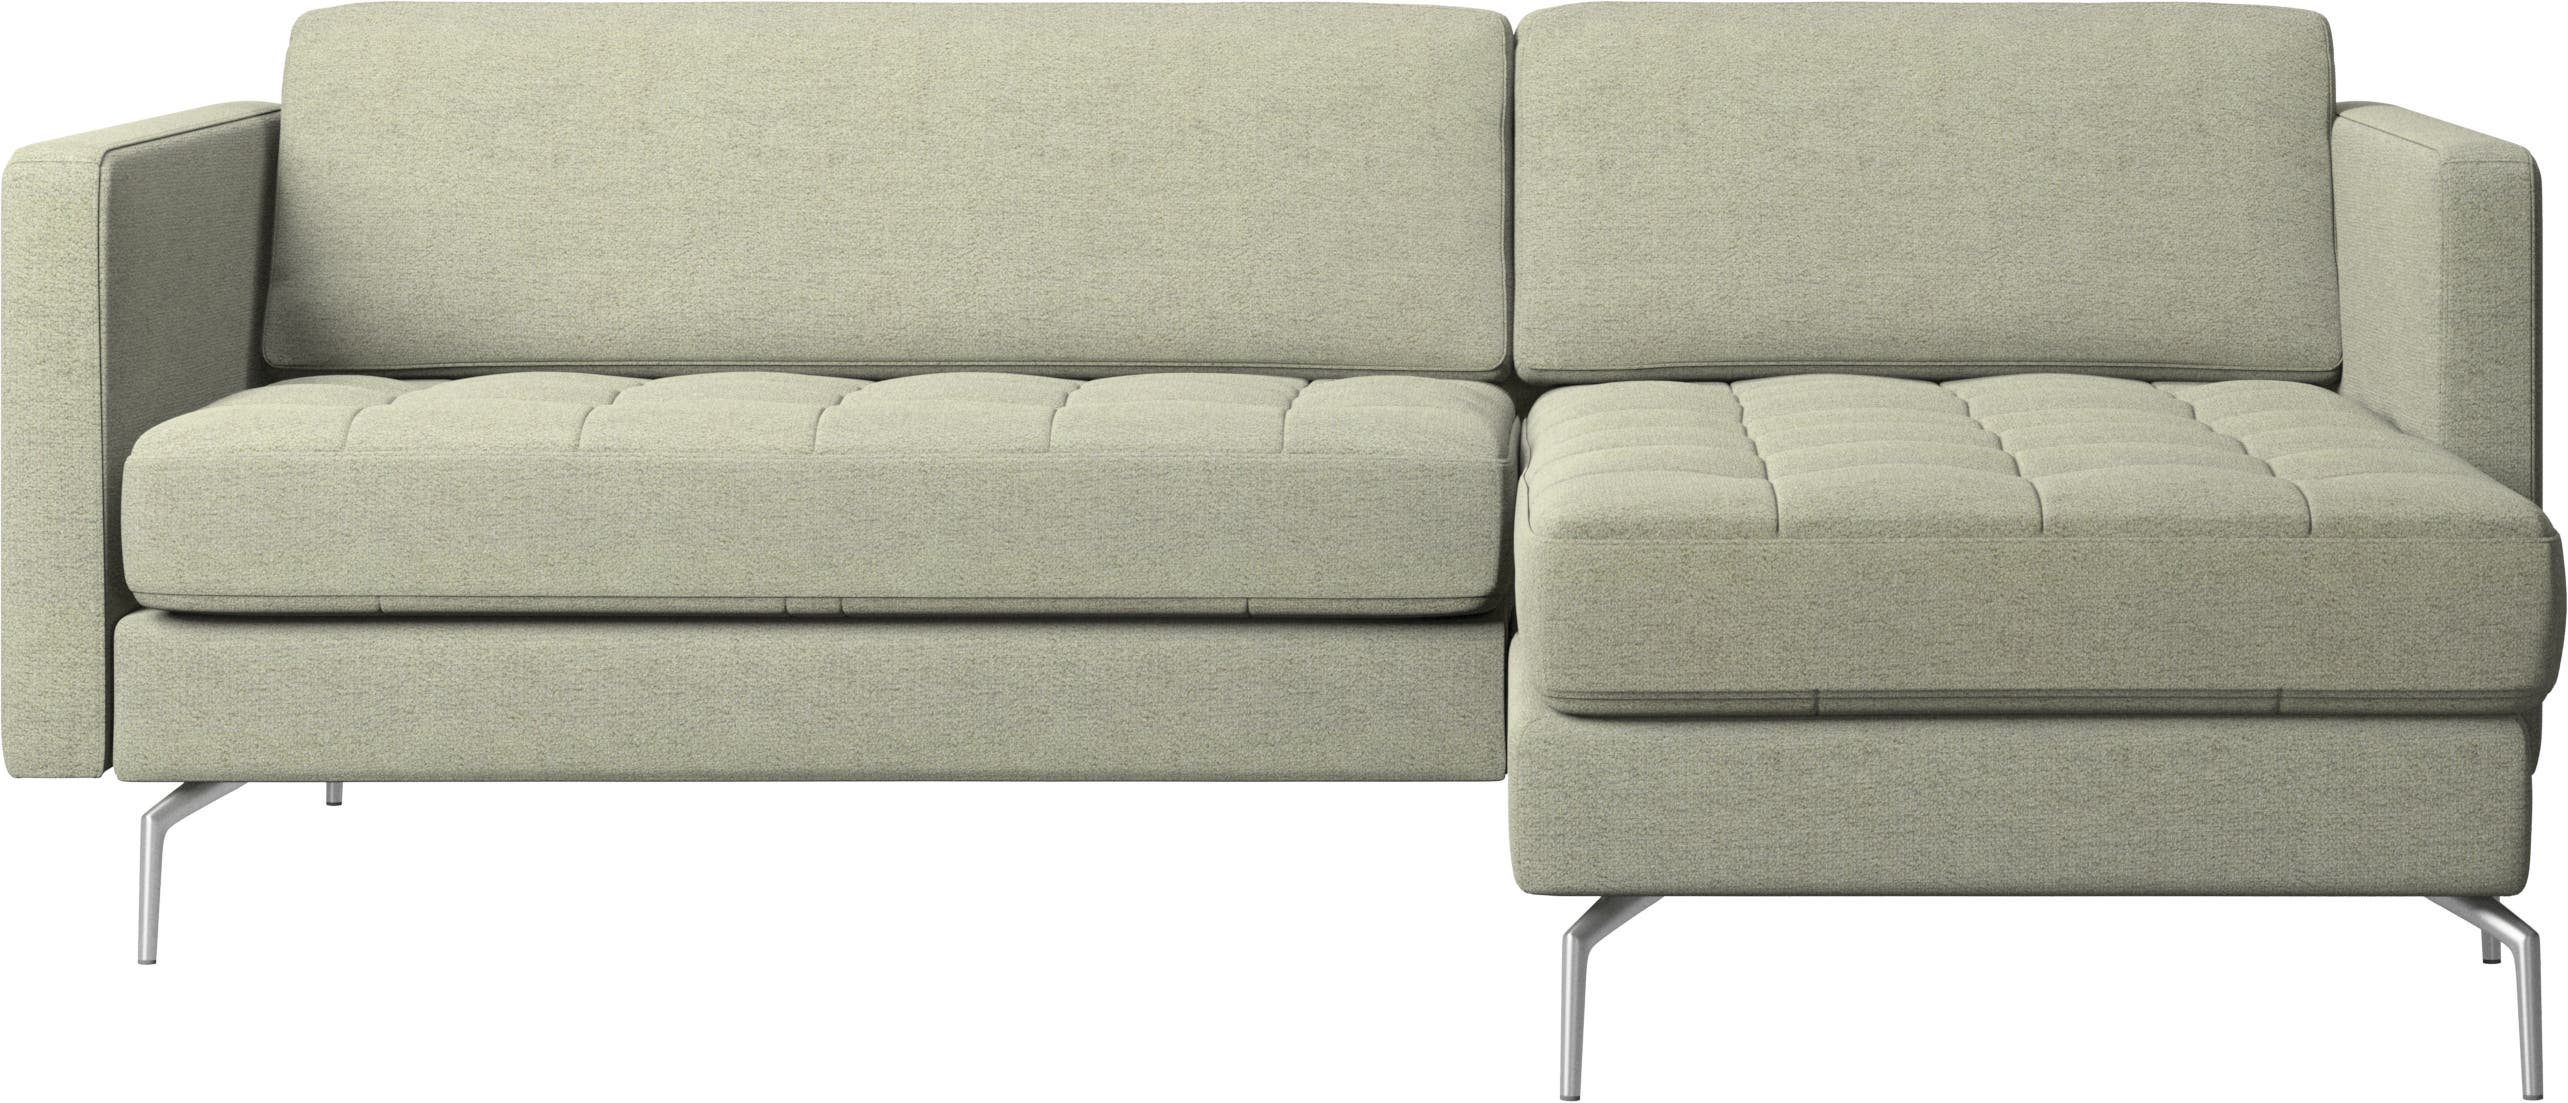 καναπές Osaka με μονάδα resting, καπιτονέ μαξιλάρι καθίσματος